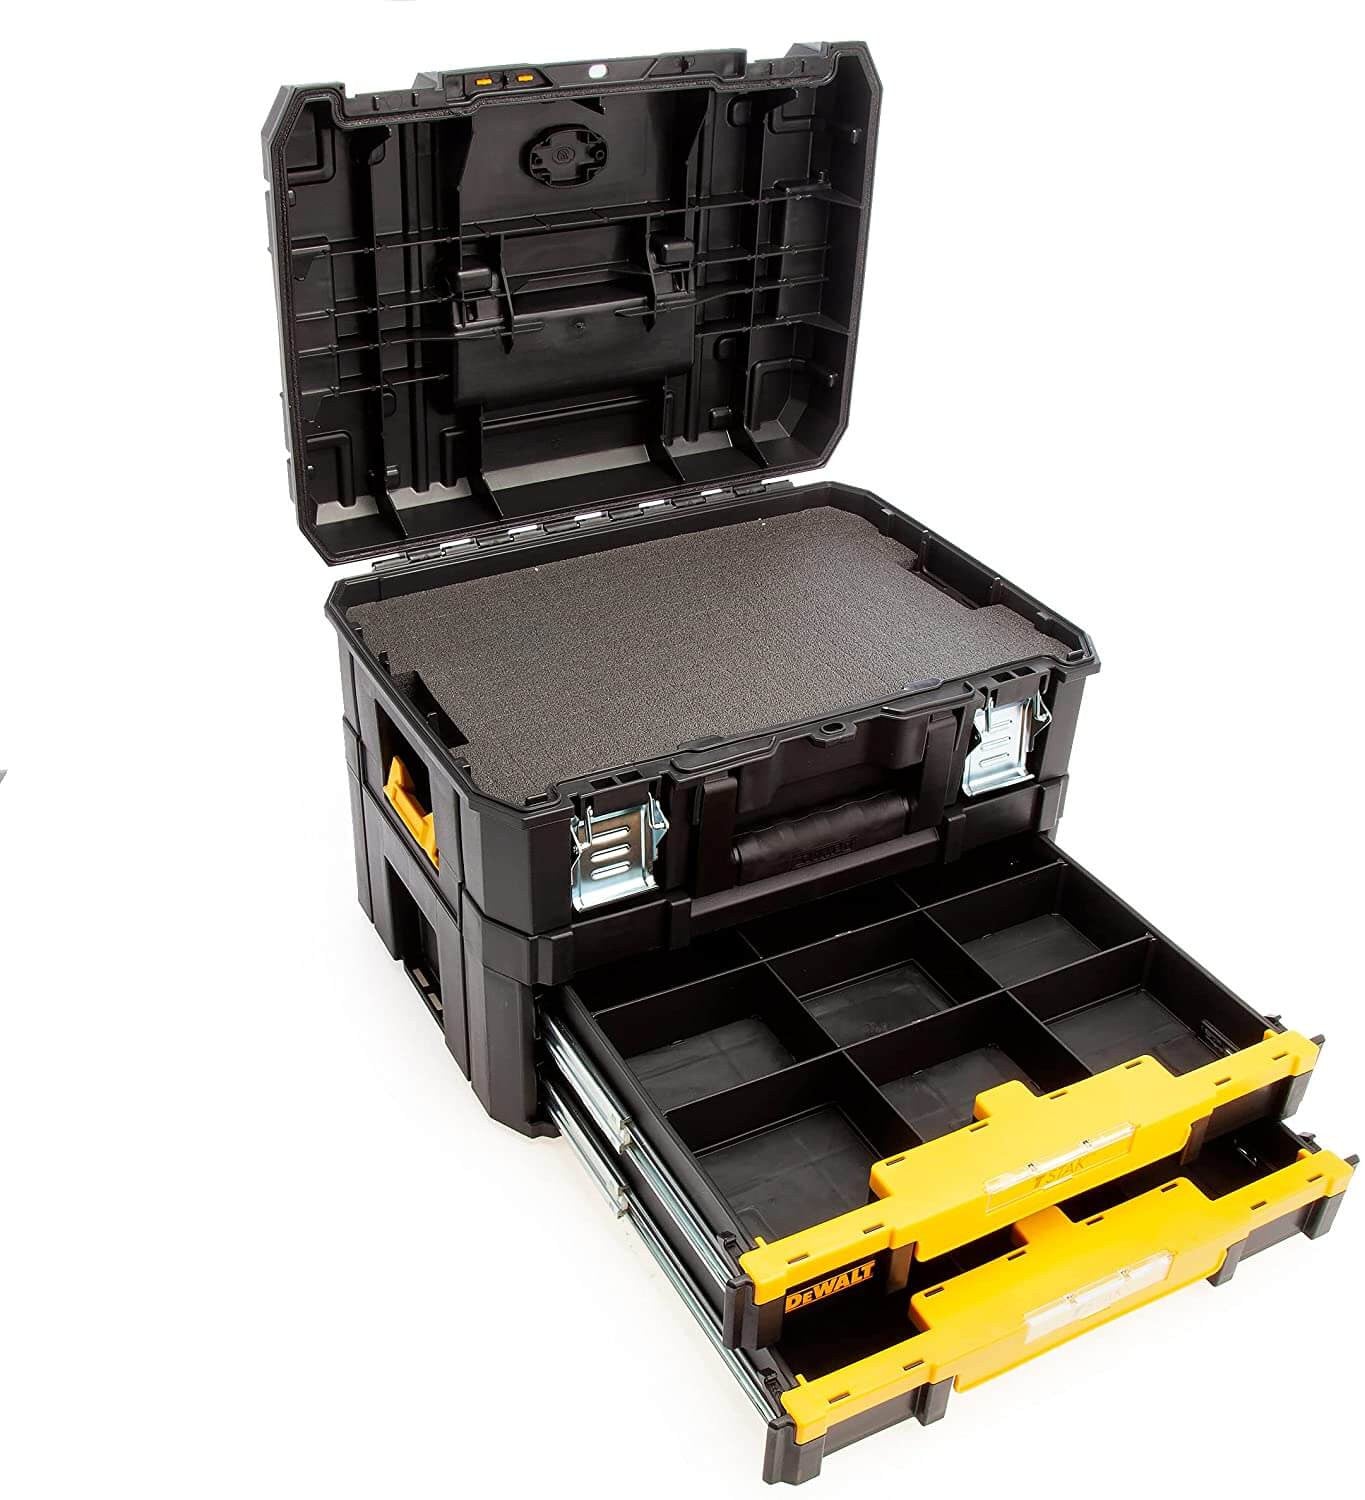 Multipurpose suitcase kit + double drawer unit IP54 Dewalt DWST83395-1